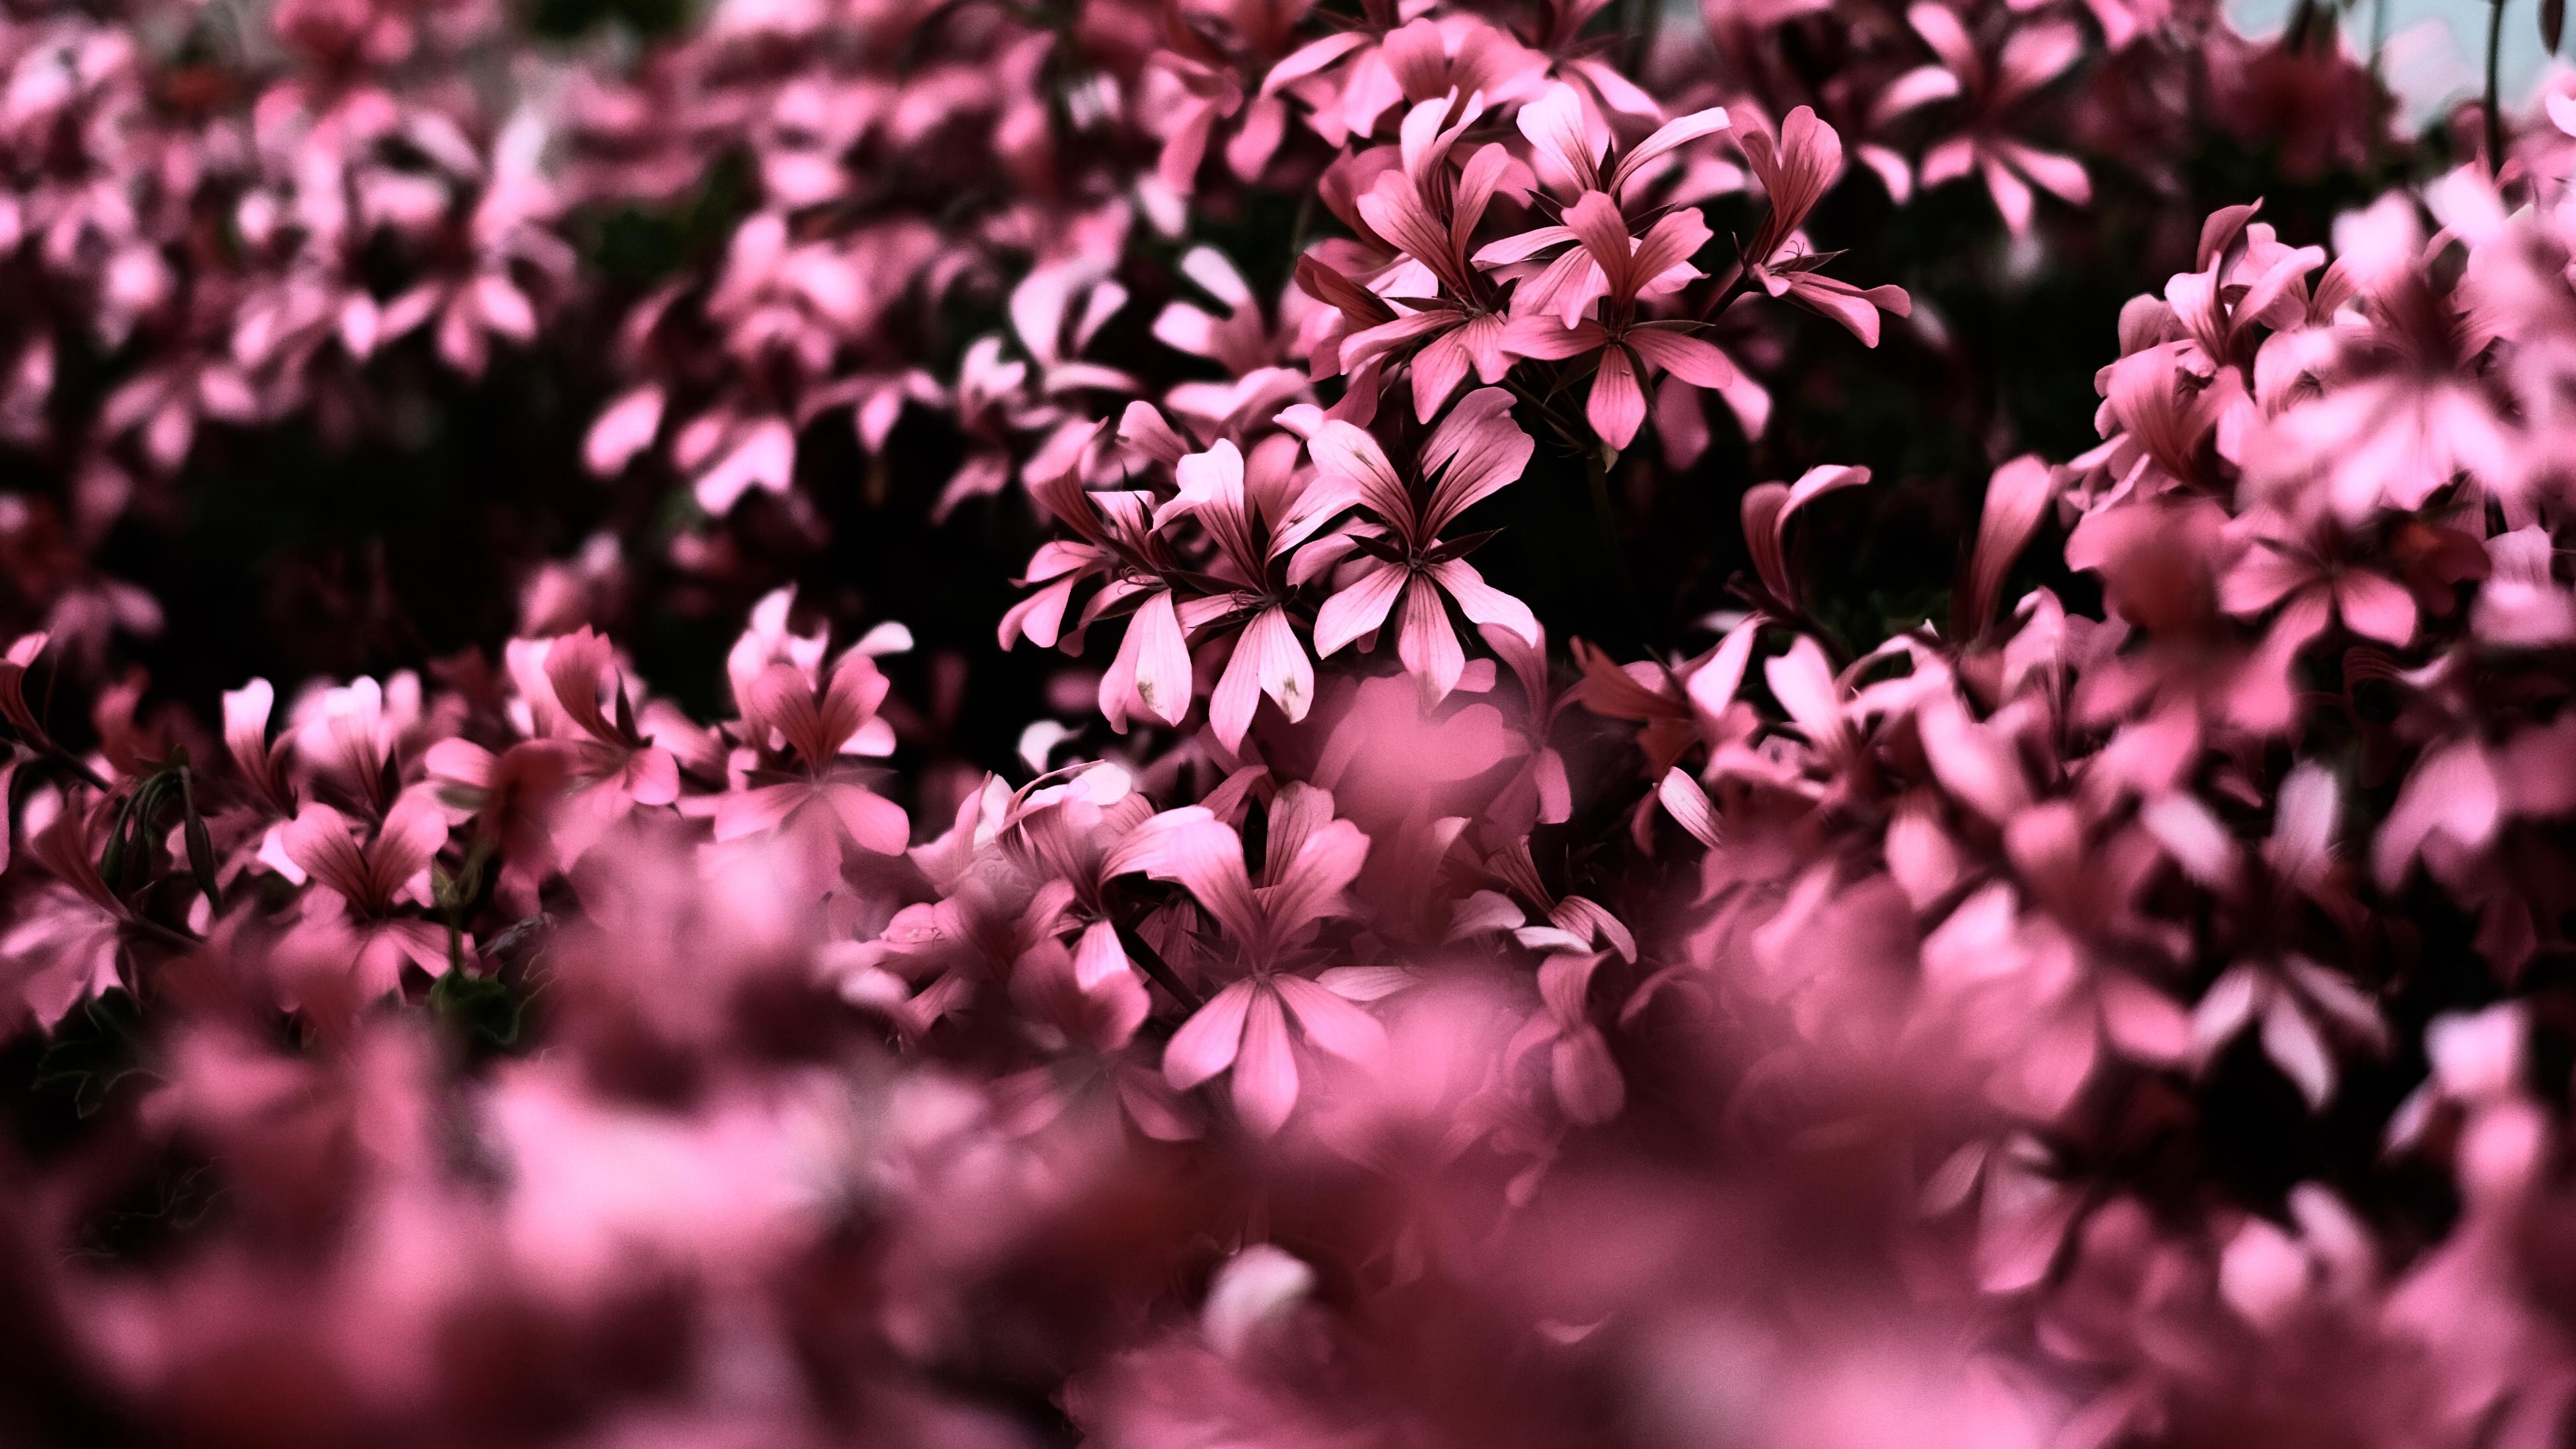 Pink Flowers Ultra HD Blur 4k, HD Flowers, 4k Wallpaper, Image